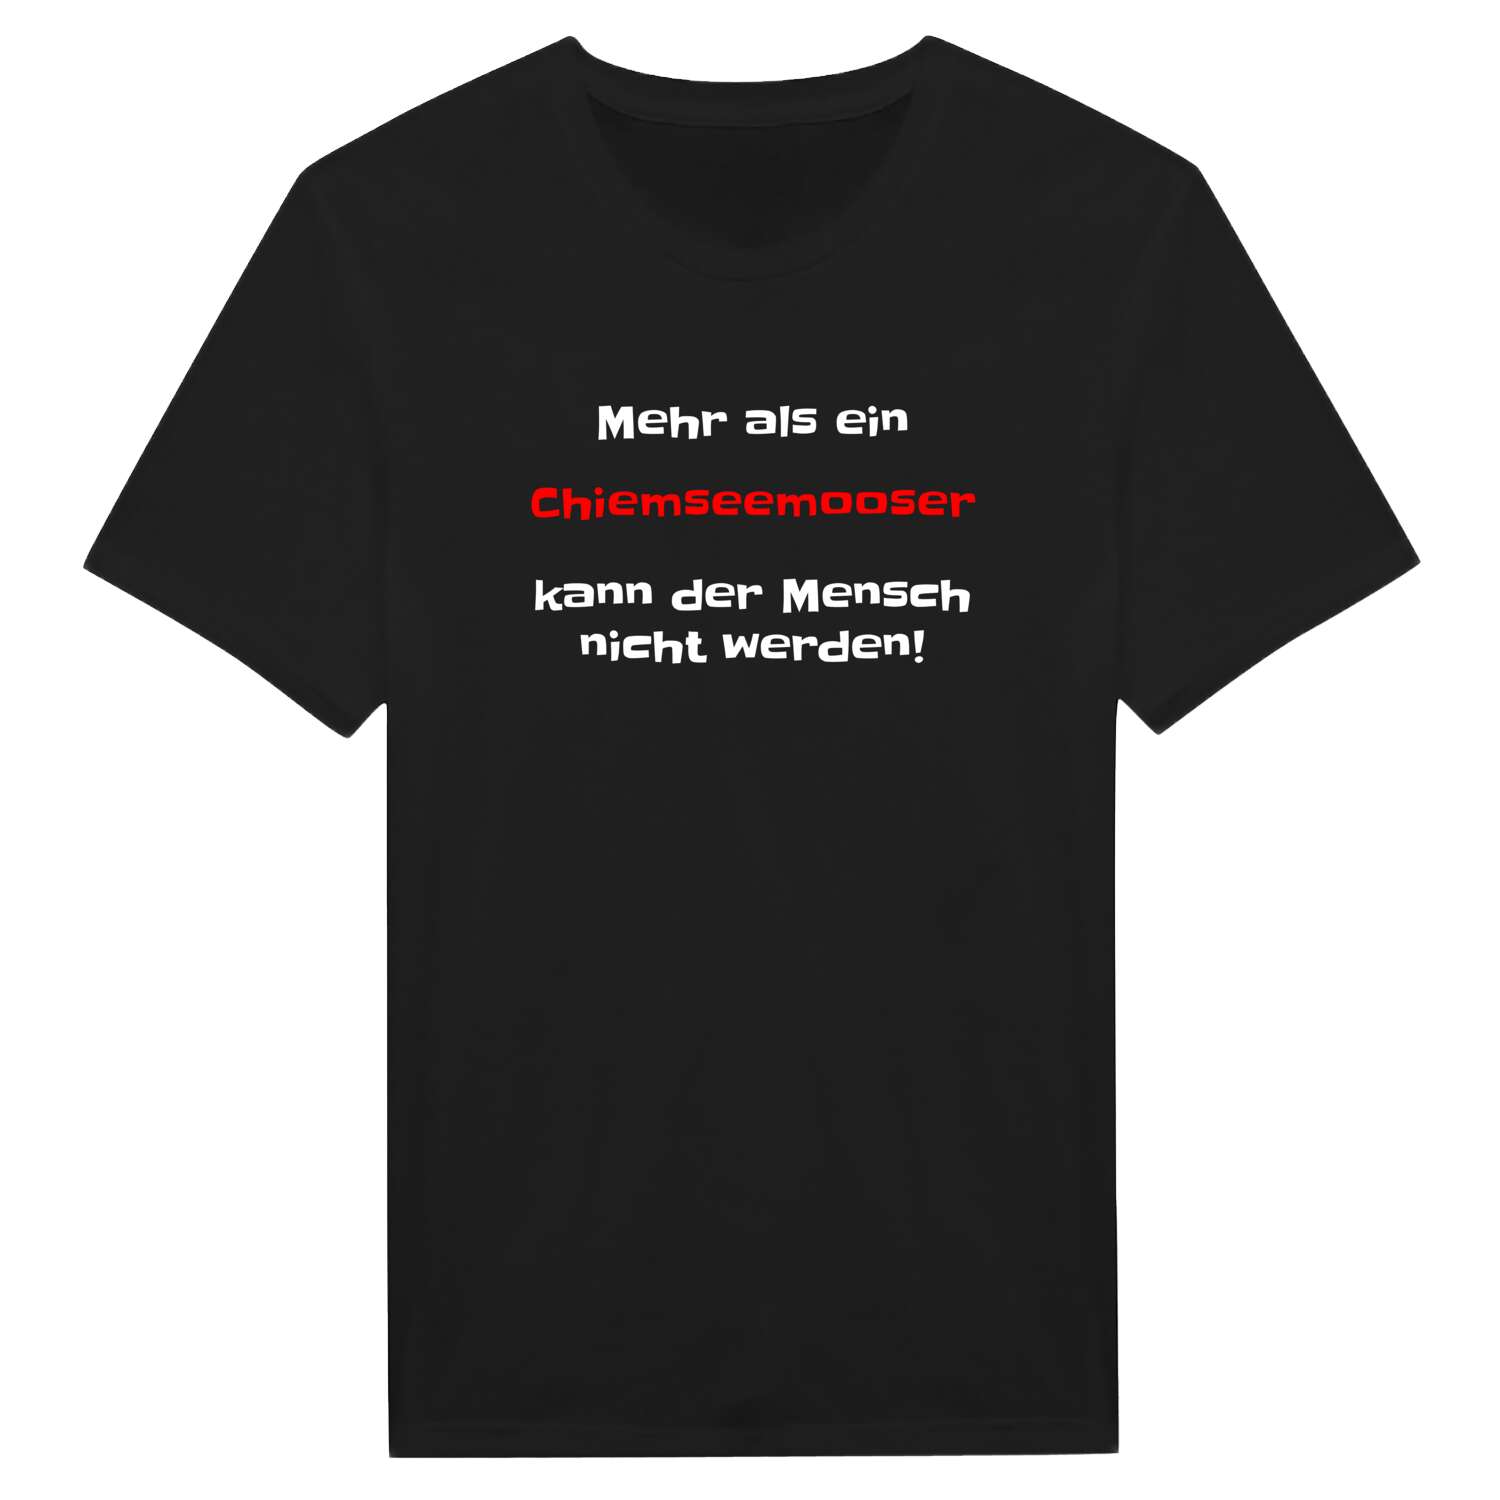 Chiemseemoos T-Shirt »Mehr als ein«